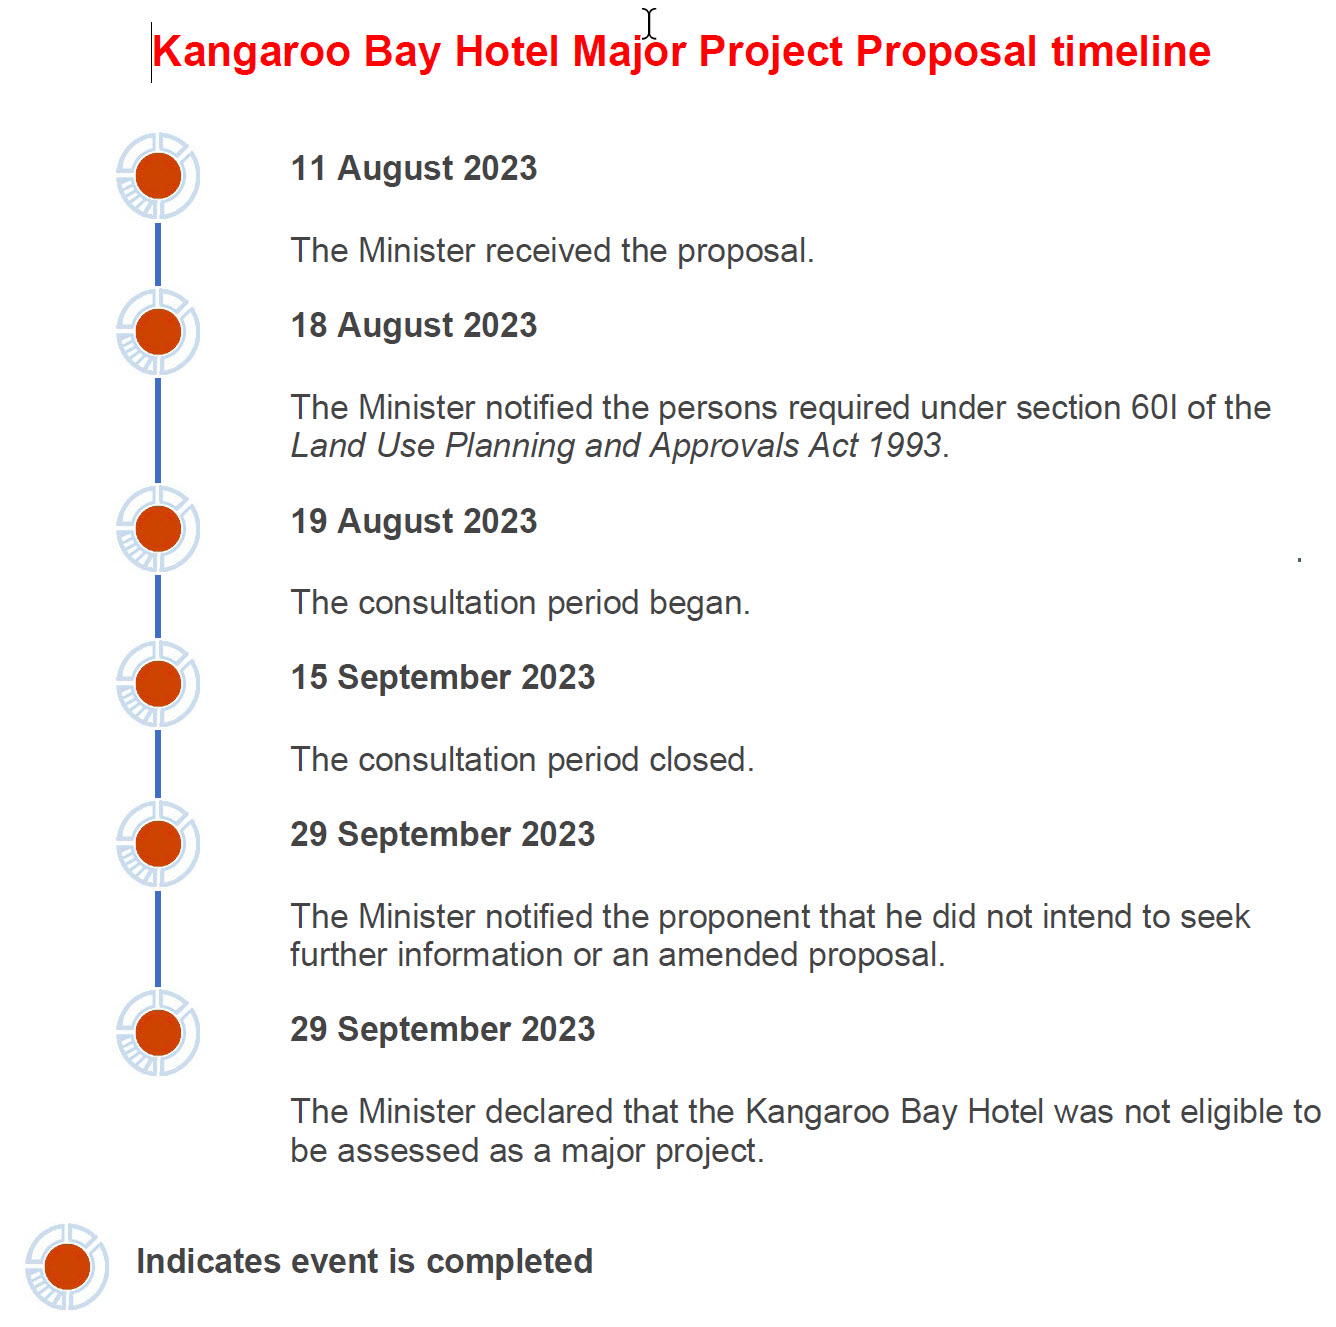 Major Project Proposal Timeline